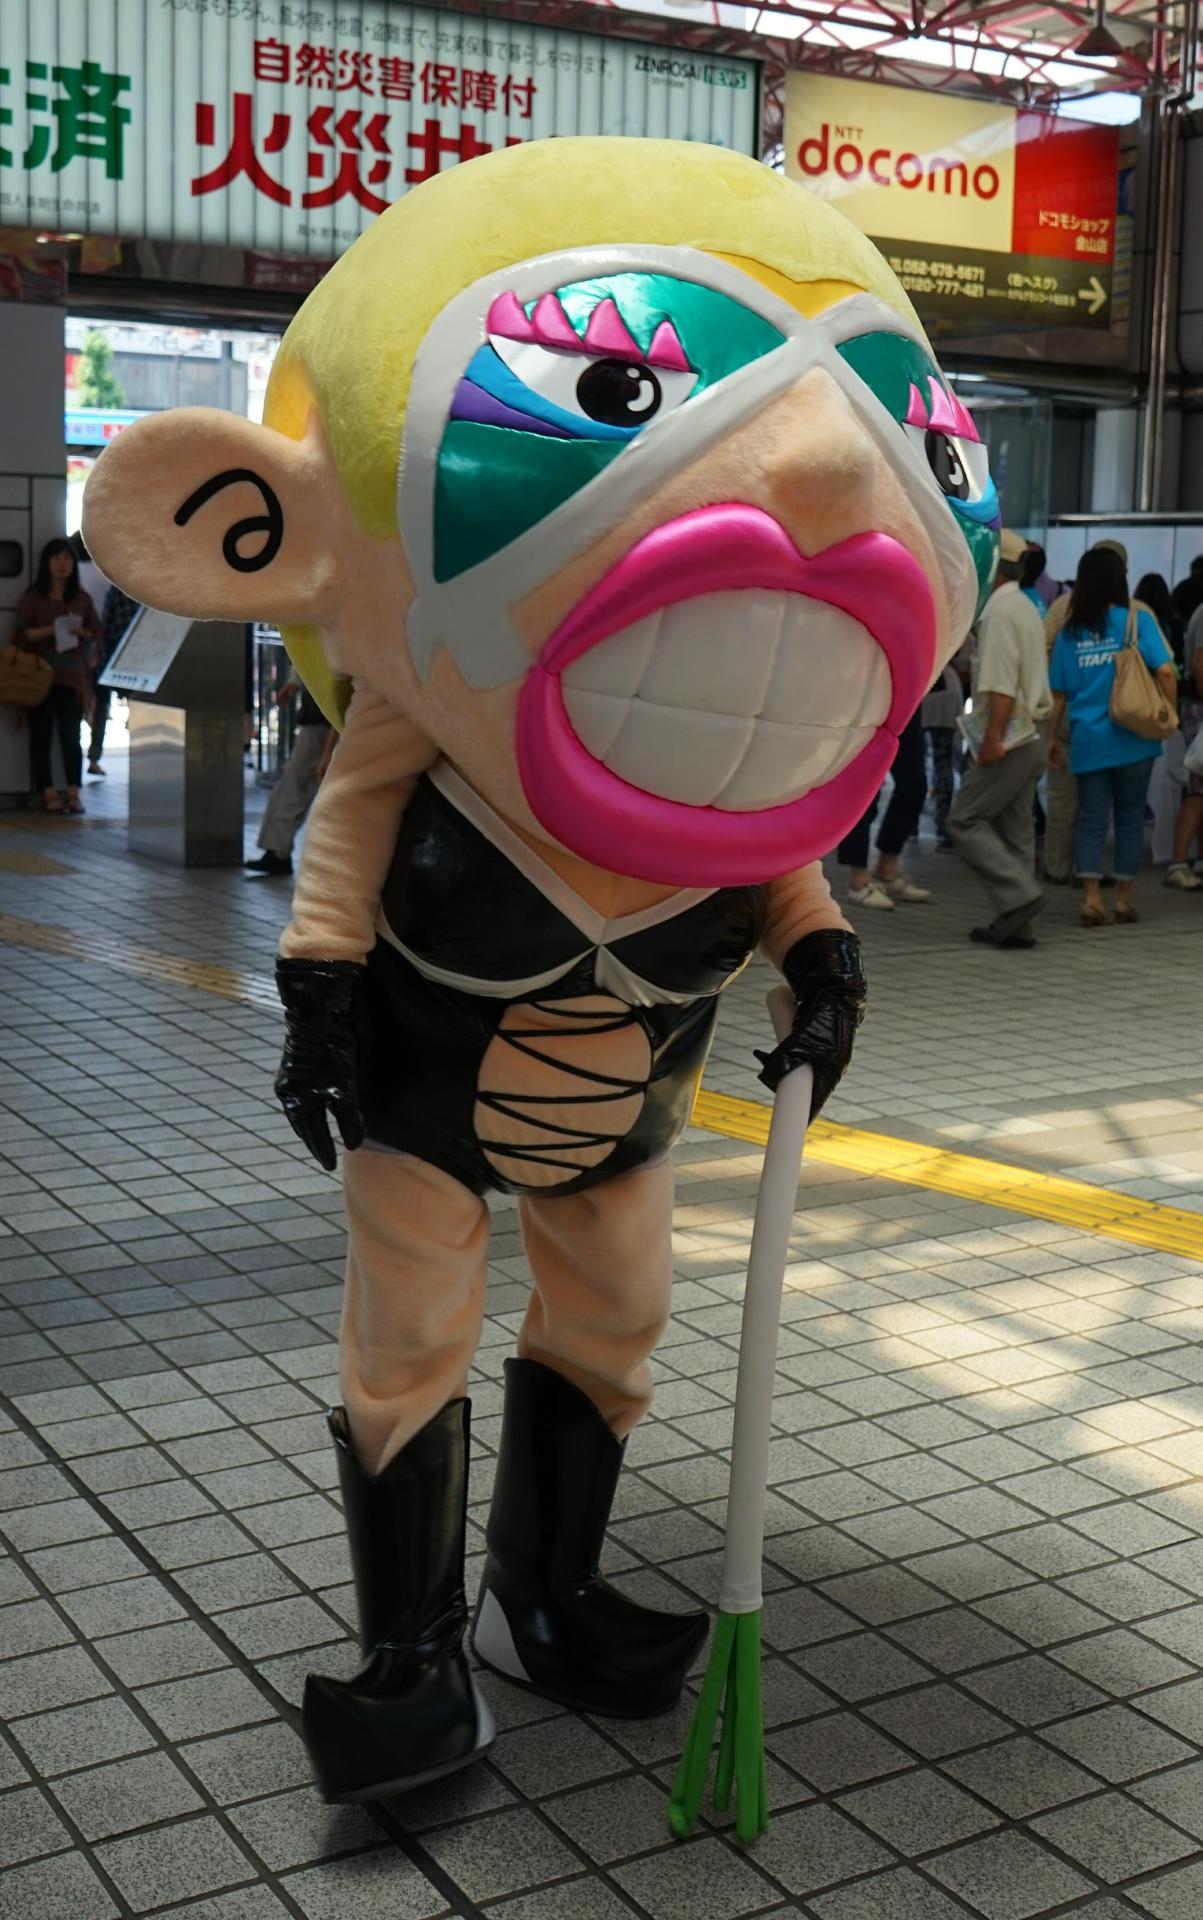 Japanese Mascot Photograph Yuruchara Jp 愛知県あま市の あま